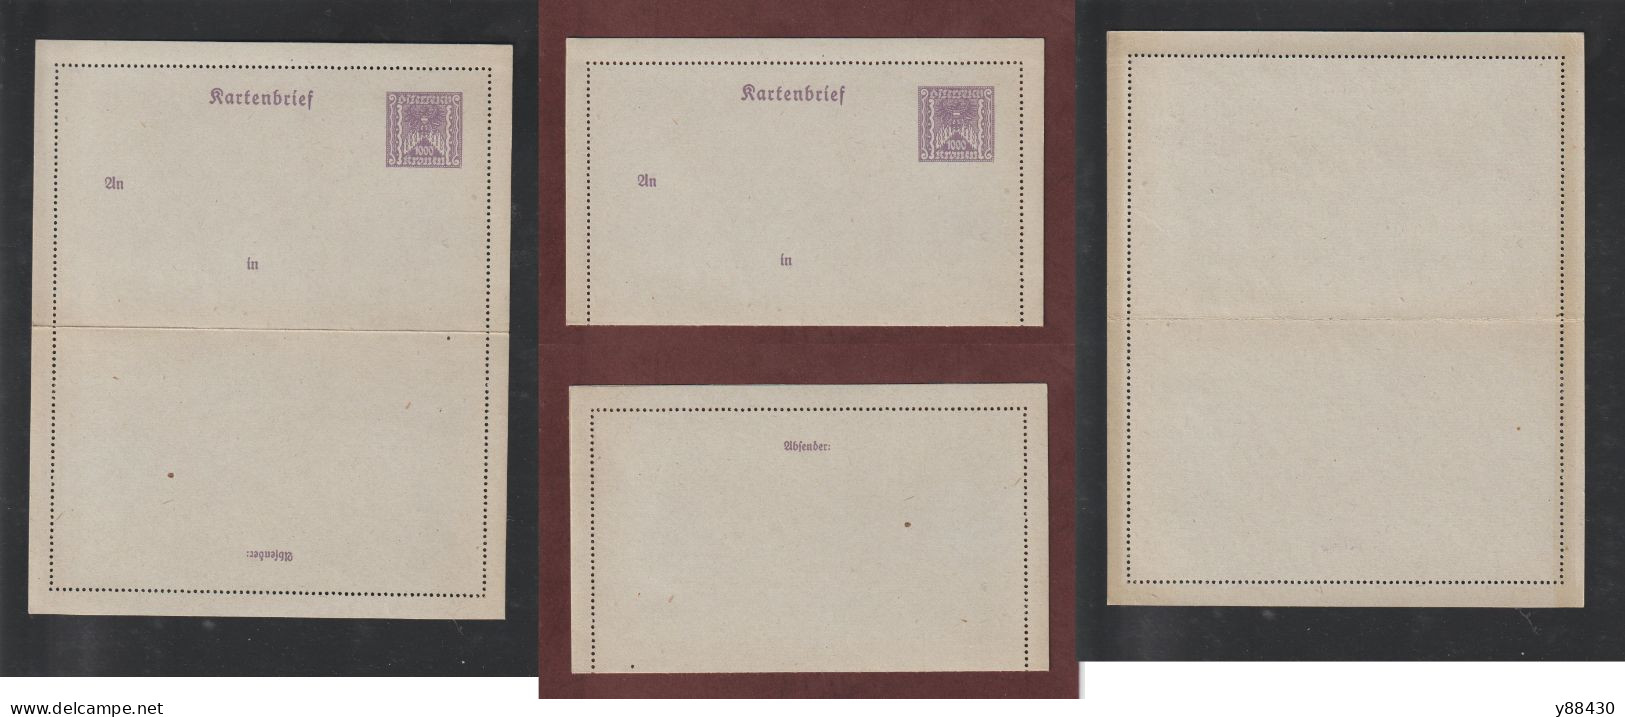 AUTRICHE - Entier Postal Neuf - 1910/1930 - Entier Sur Carte Lettre Gommé  - 1000k. Violet  - 5 Scan - Cartas-Letras